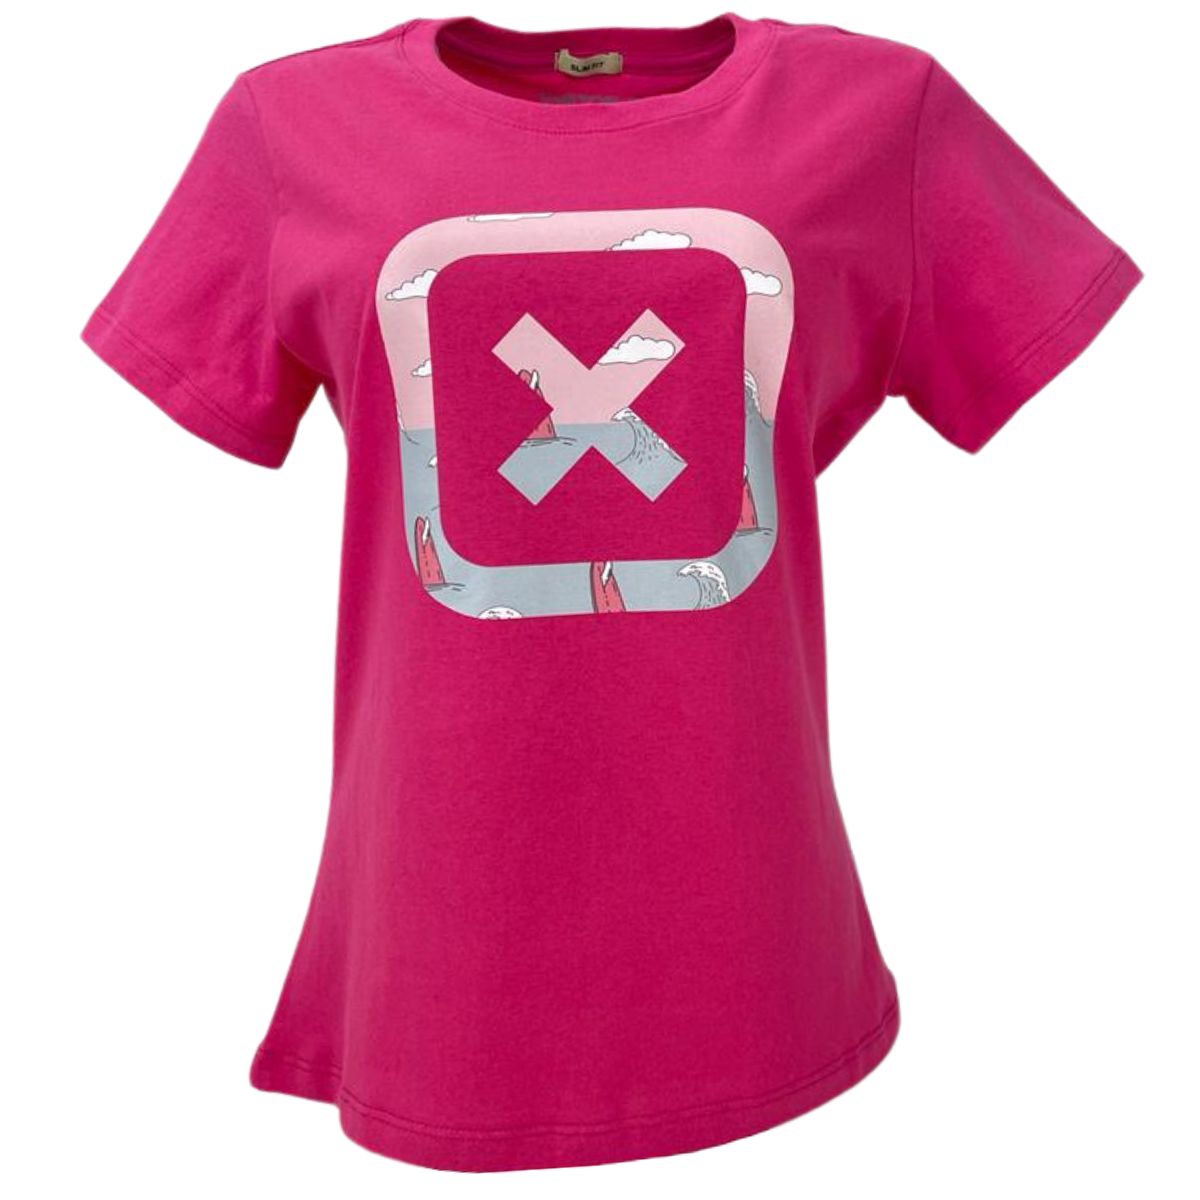 Camiseta Feminina TXC Custom Estampada Rosa Choque Ref. 50455